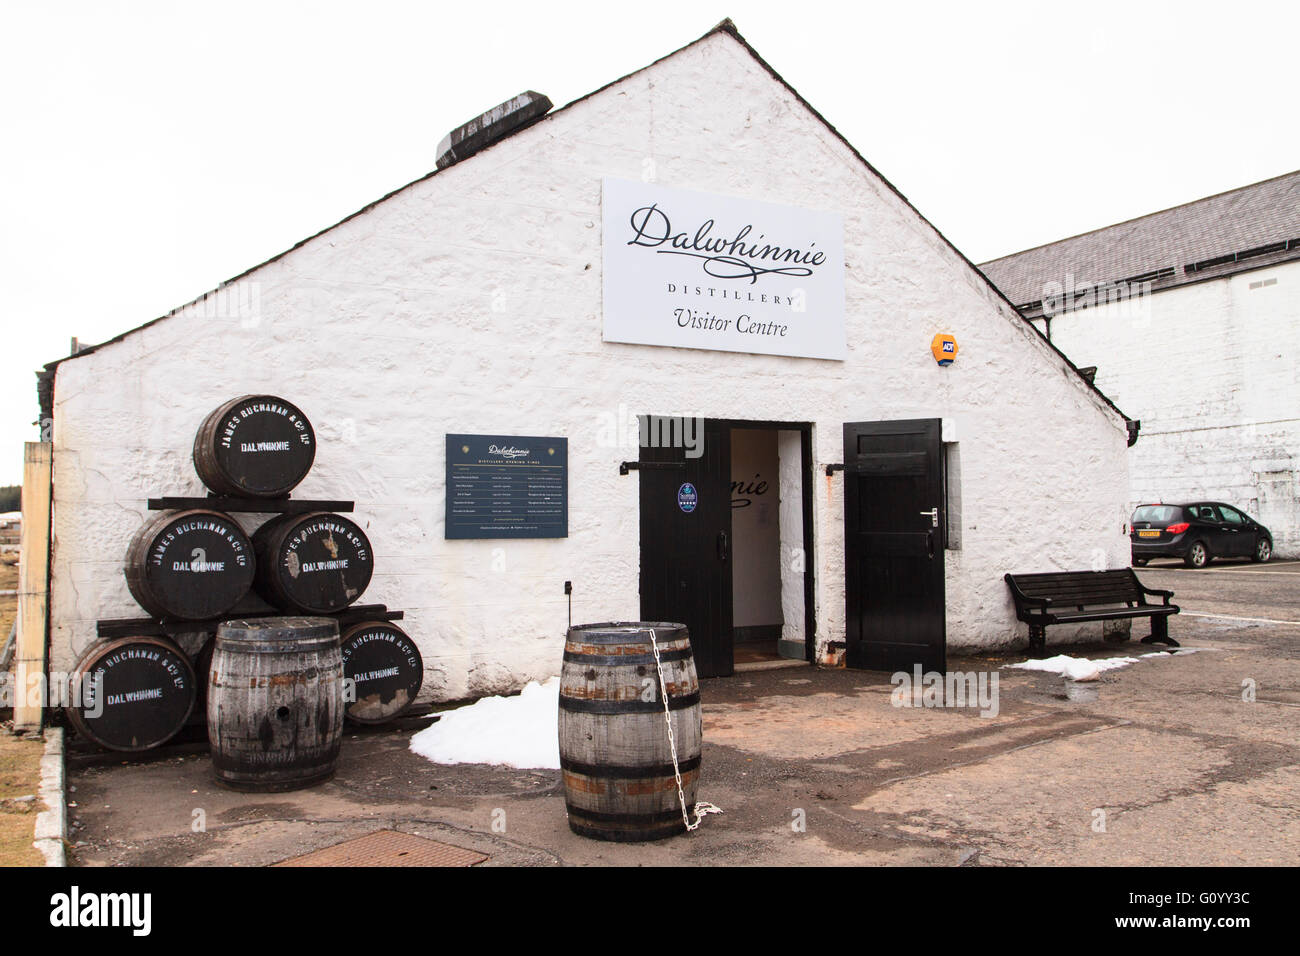 Esterno di Dalwhinnie Distillery Visitor Centre in Highland, Scozia, la distilleria più alta nelle highlands. Foto Stock